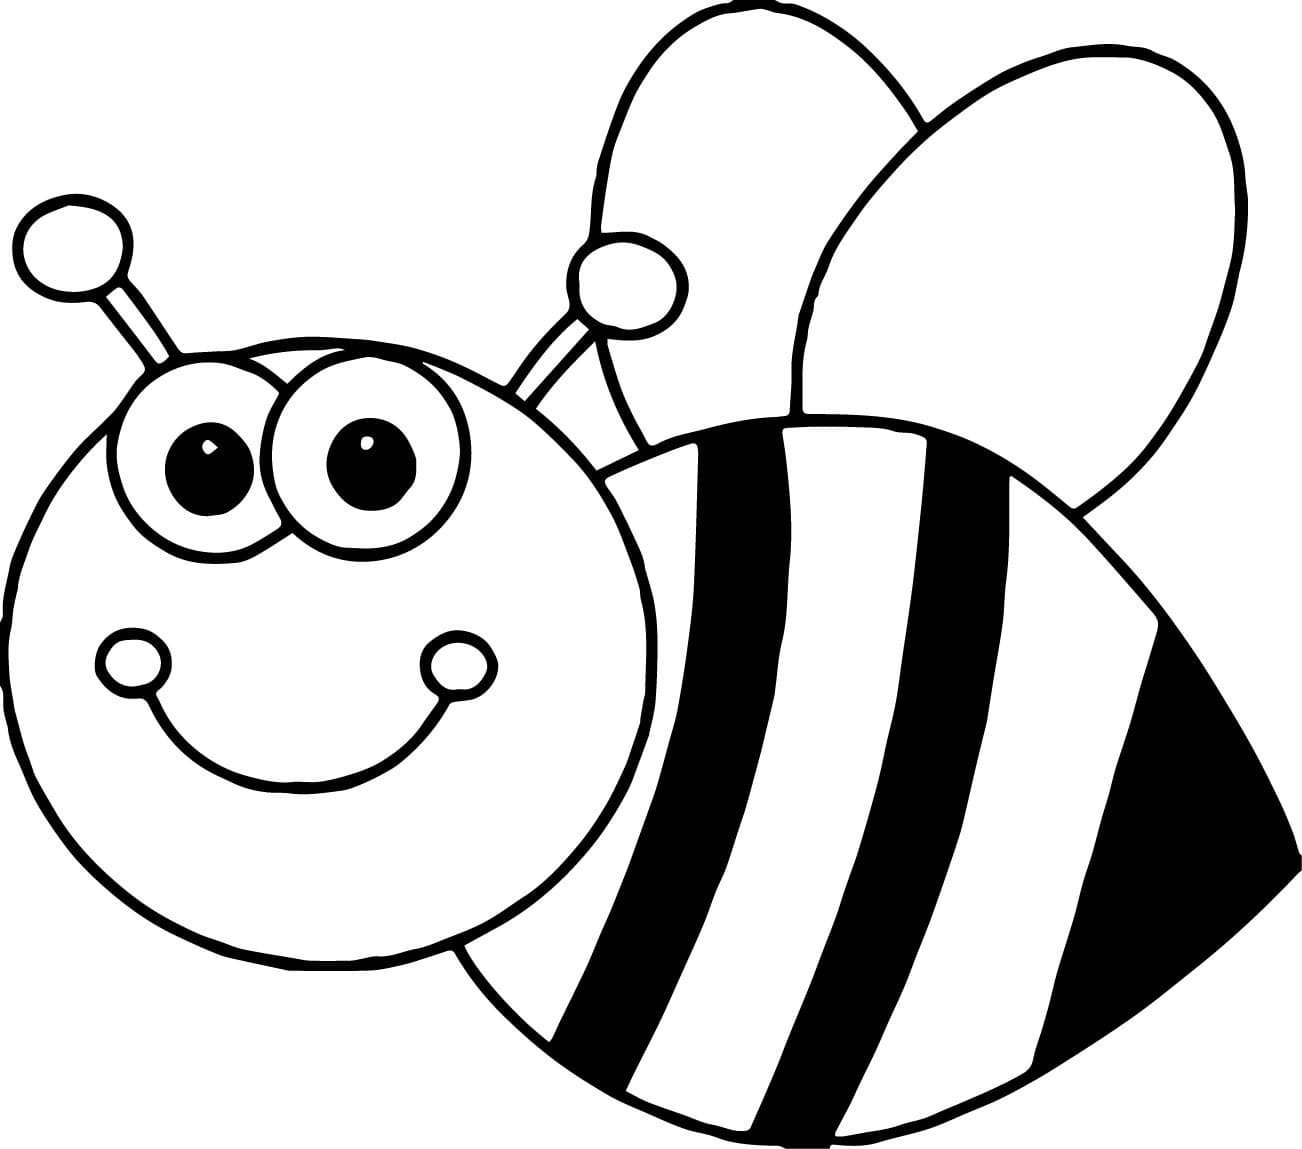 Раскраска онлайн Пчелка рисунок для детей бесплатно